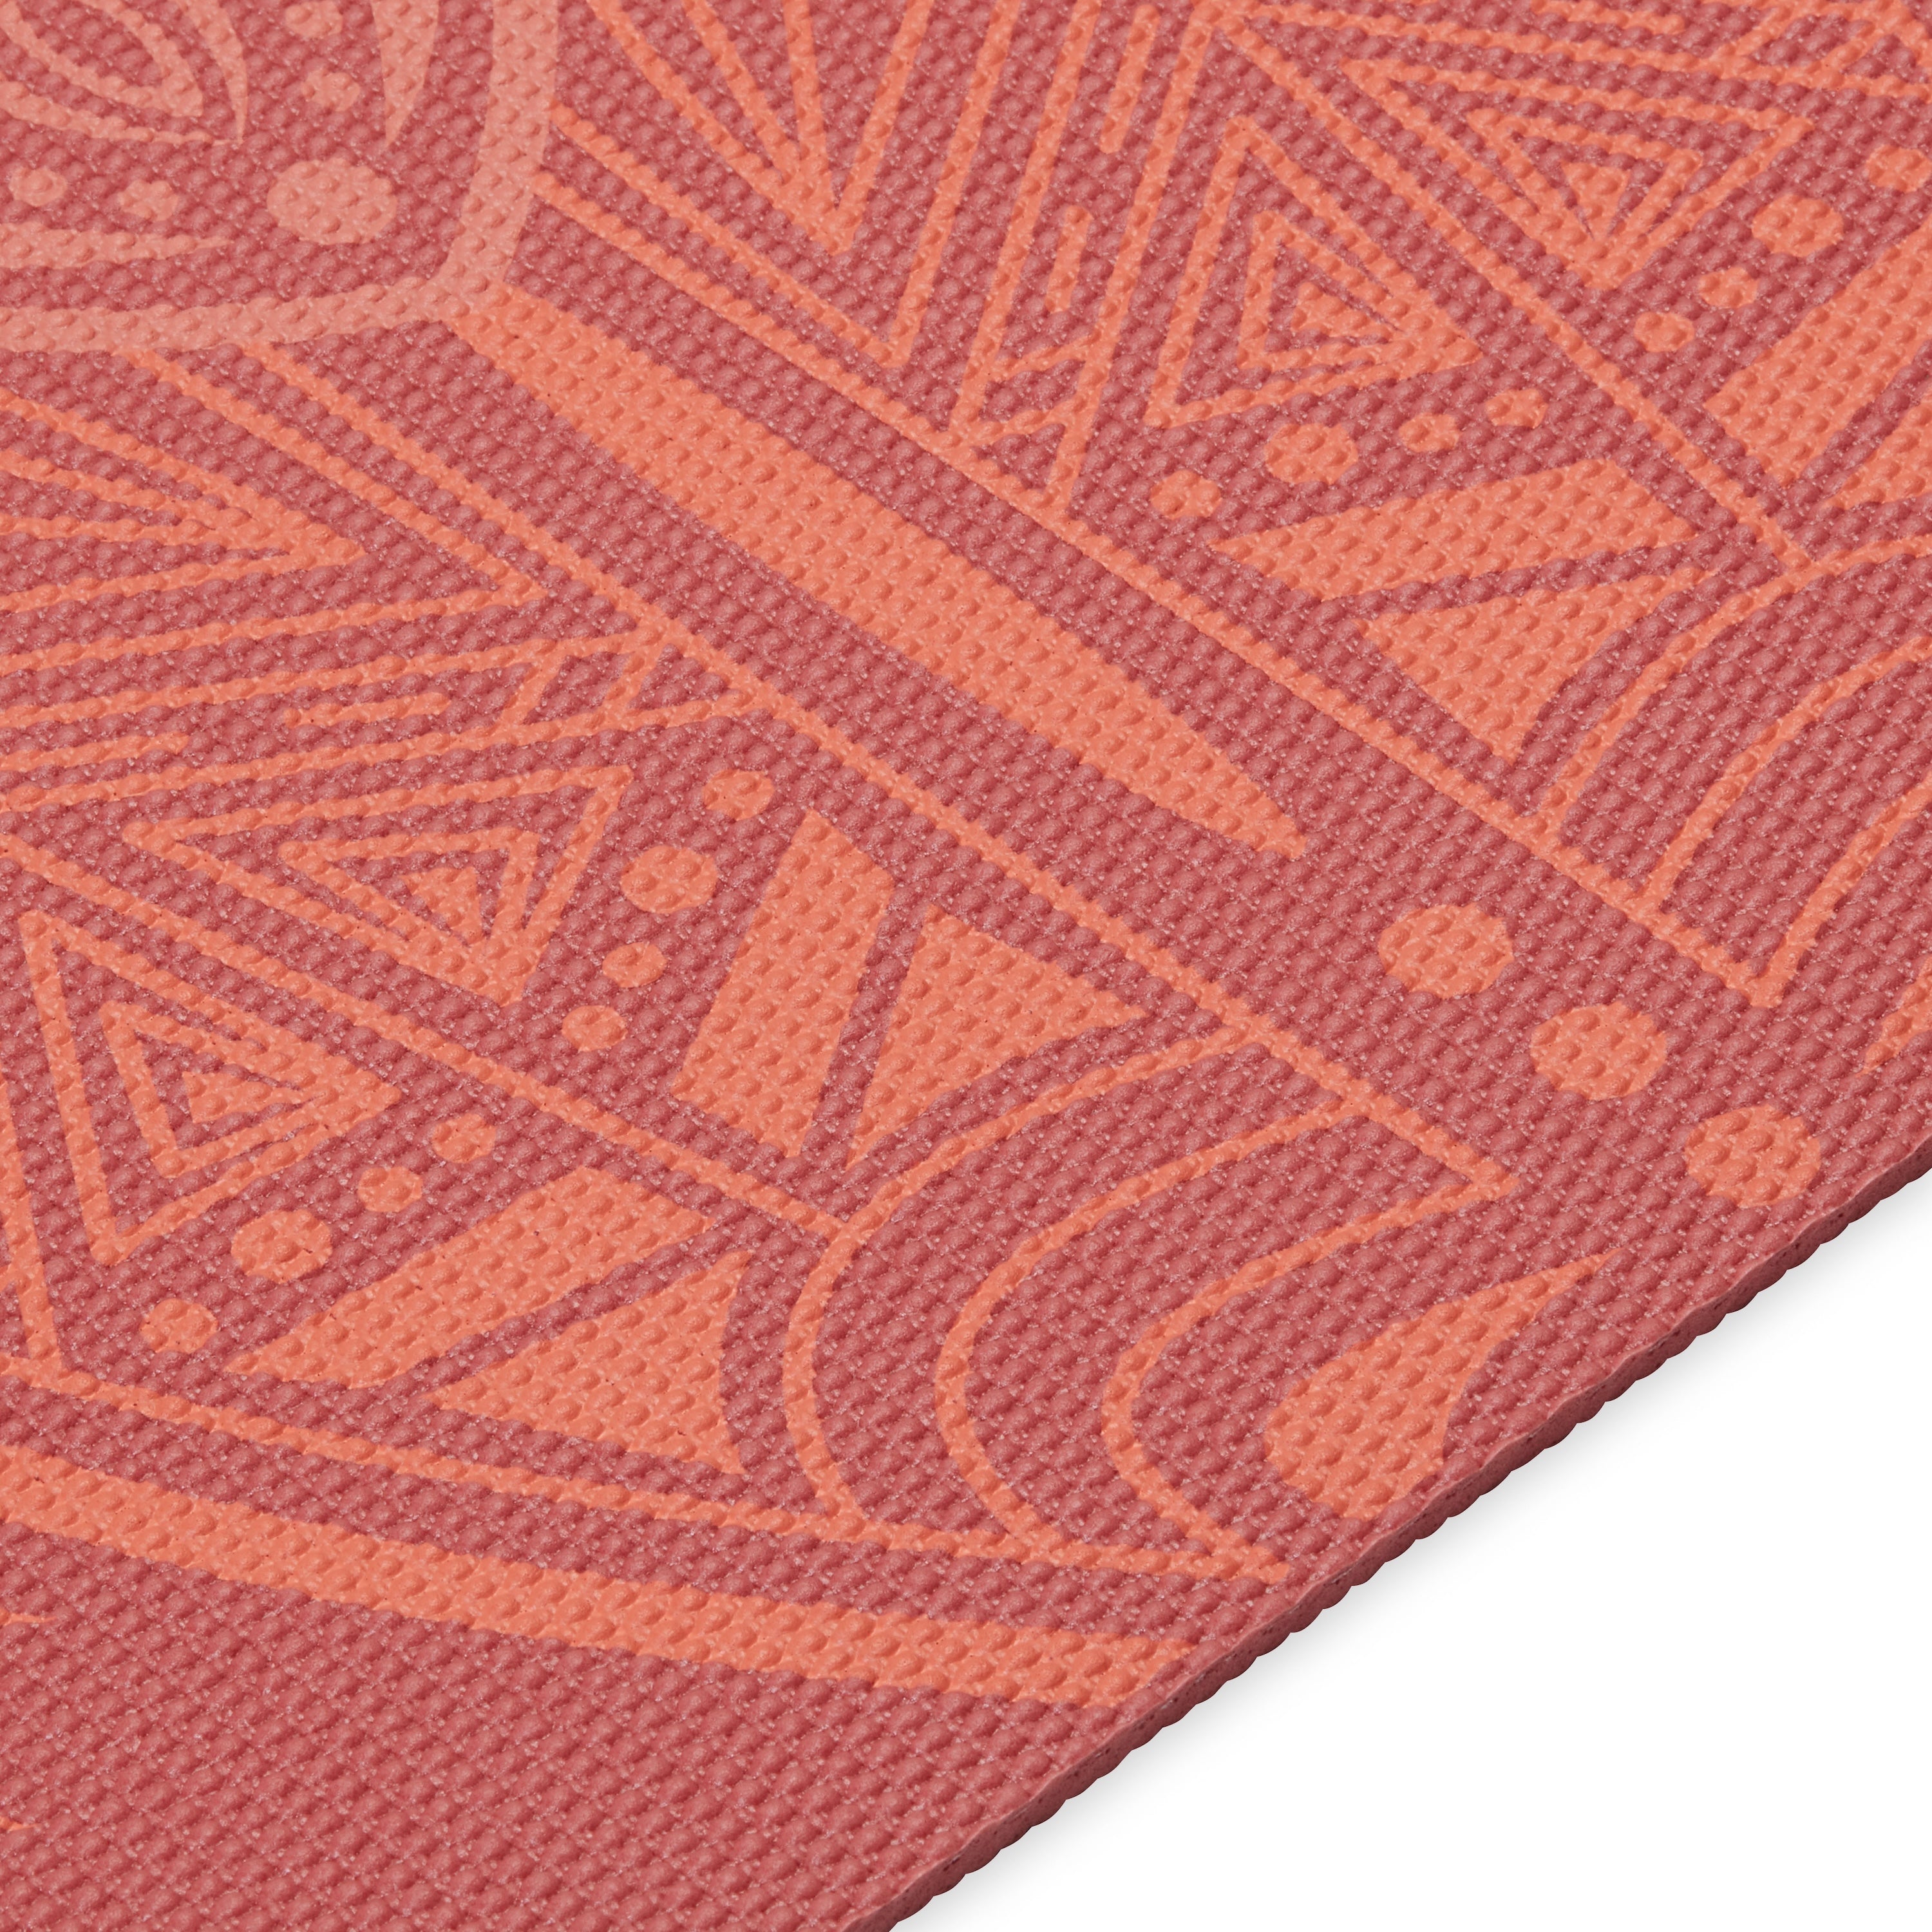 Gaiam Premium Reversible Changing Petals Yoga Mat (6mm) closeup